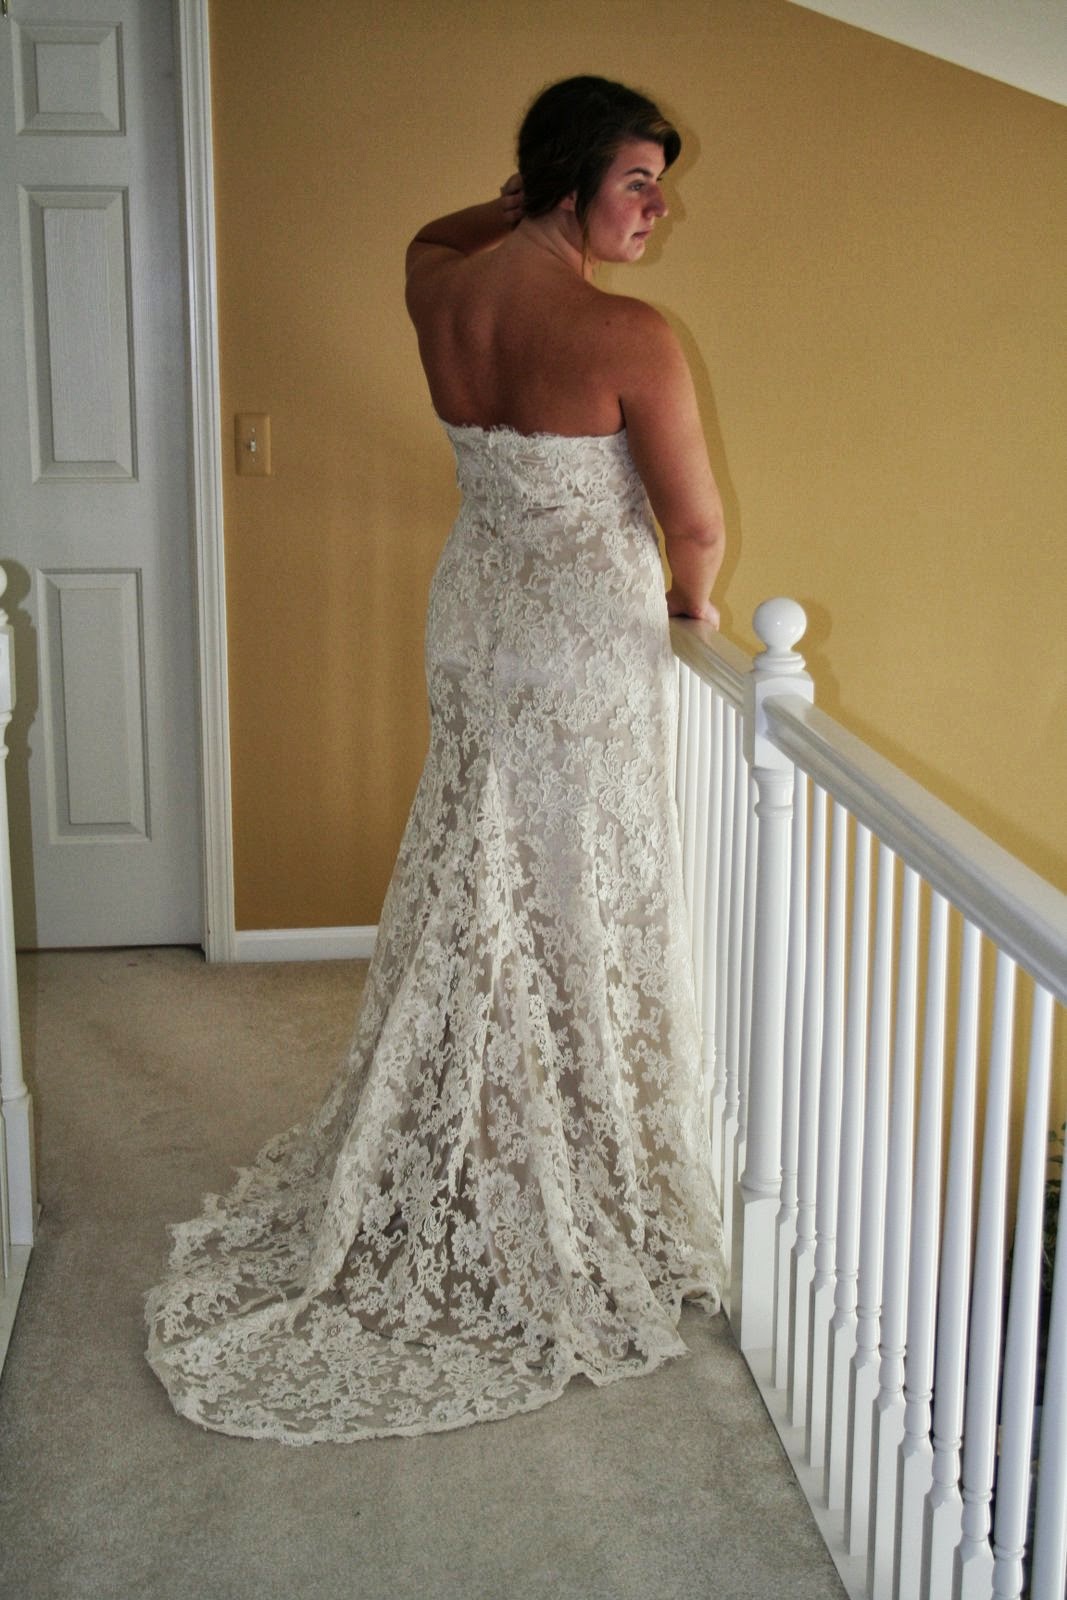 Bonnie Daws Bridal Design Blog - Affordable Elegance: ANOTHER JUNE ...